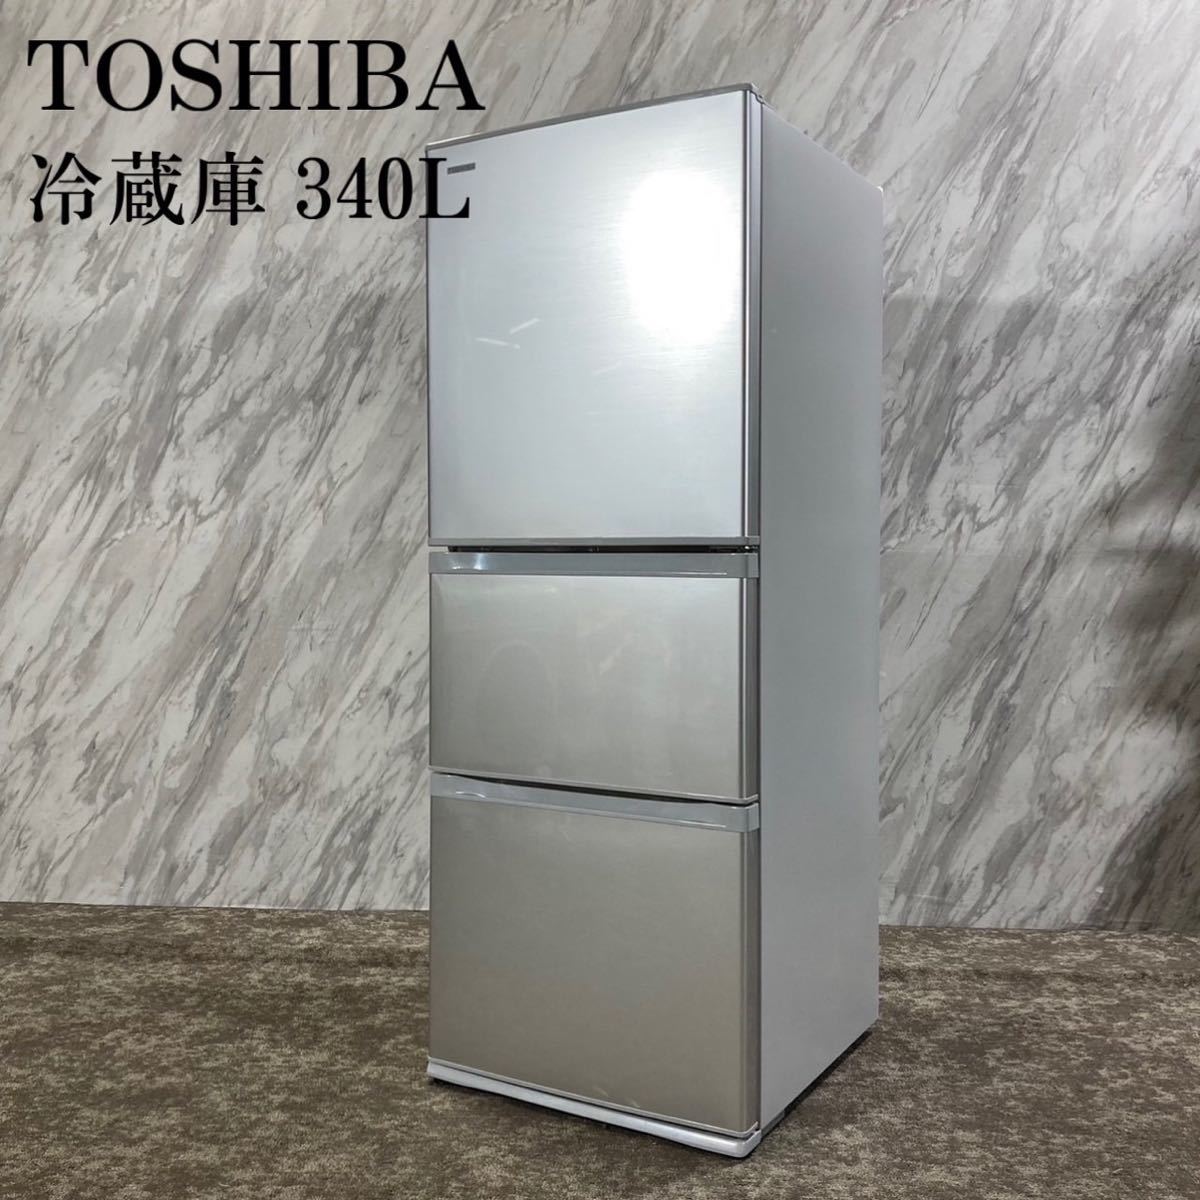 TOSHIBA 冷蔵庫 GR-H34S(S) 340L 3ドア 家電 I292-